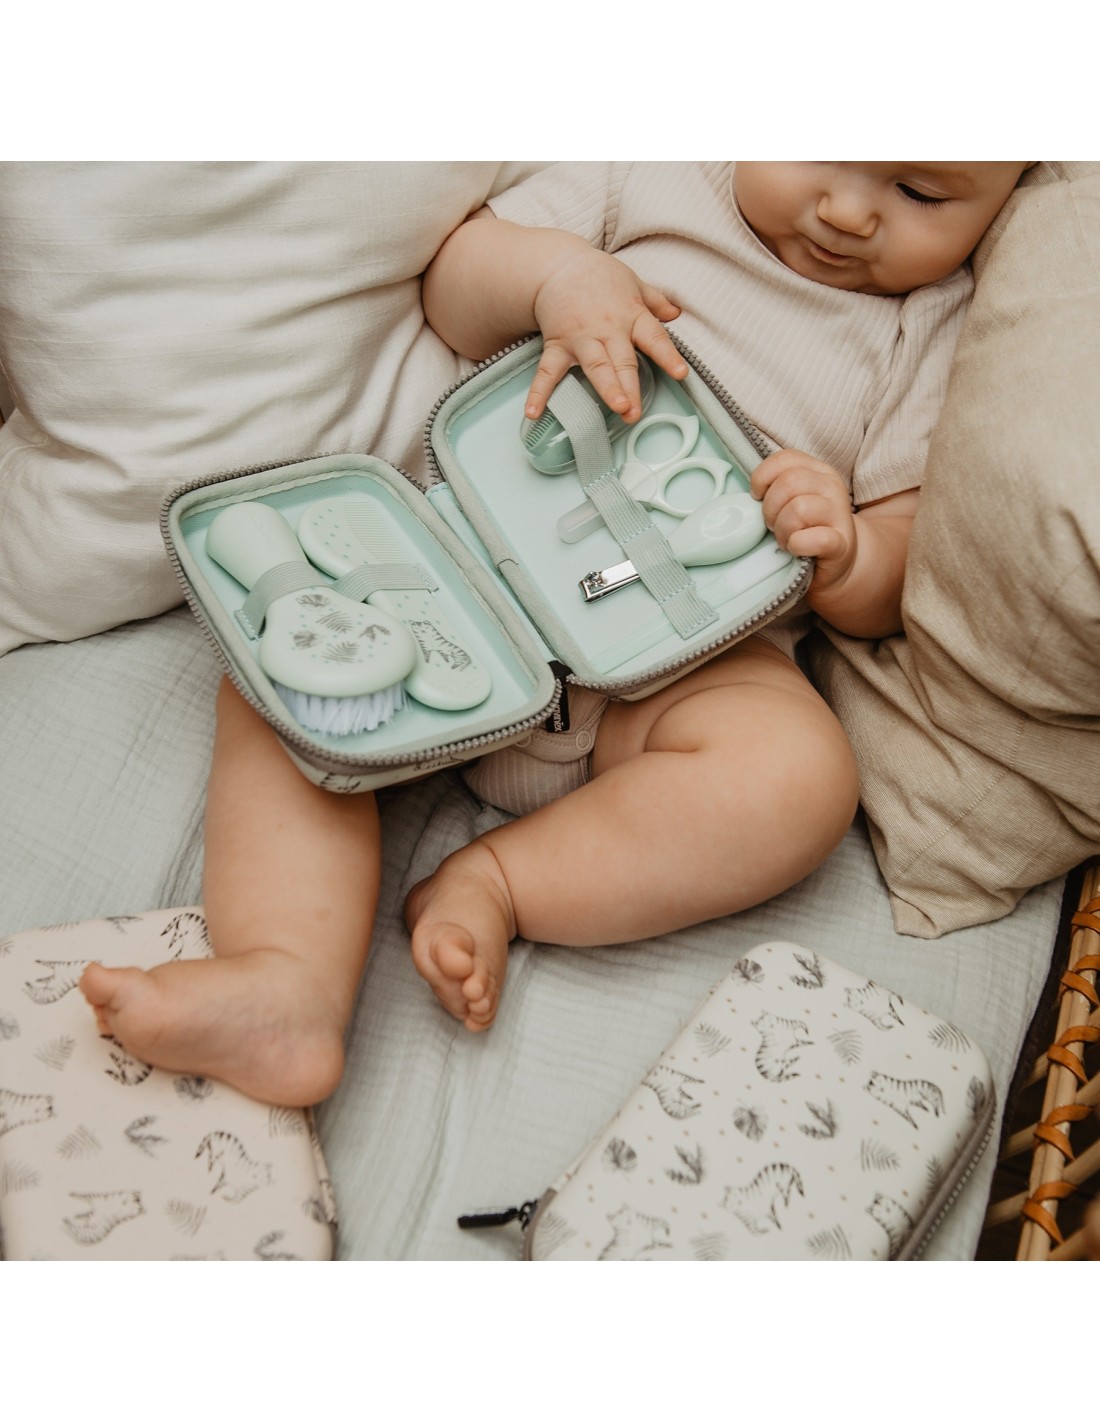 GENERICO Set manicura bebe kit aseo de bebe higiene bebe